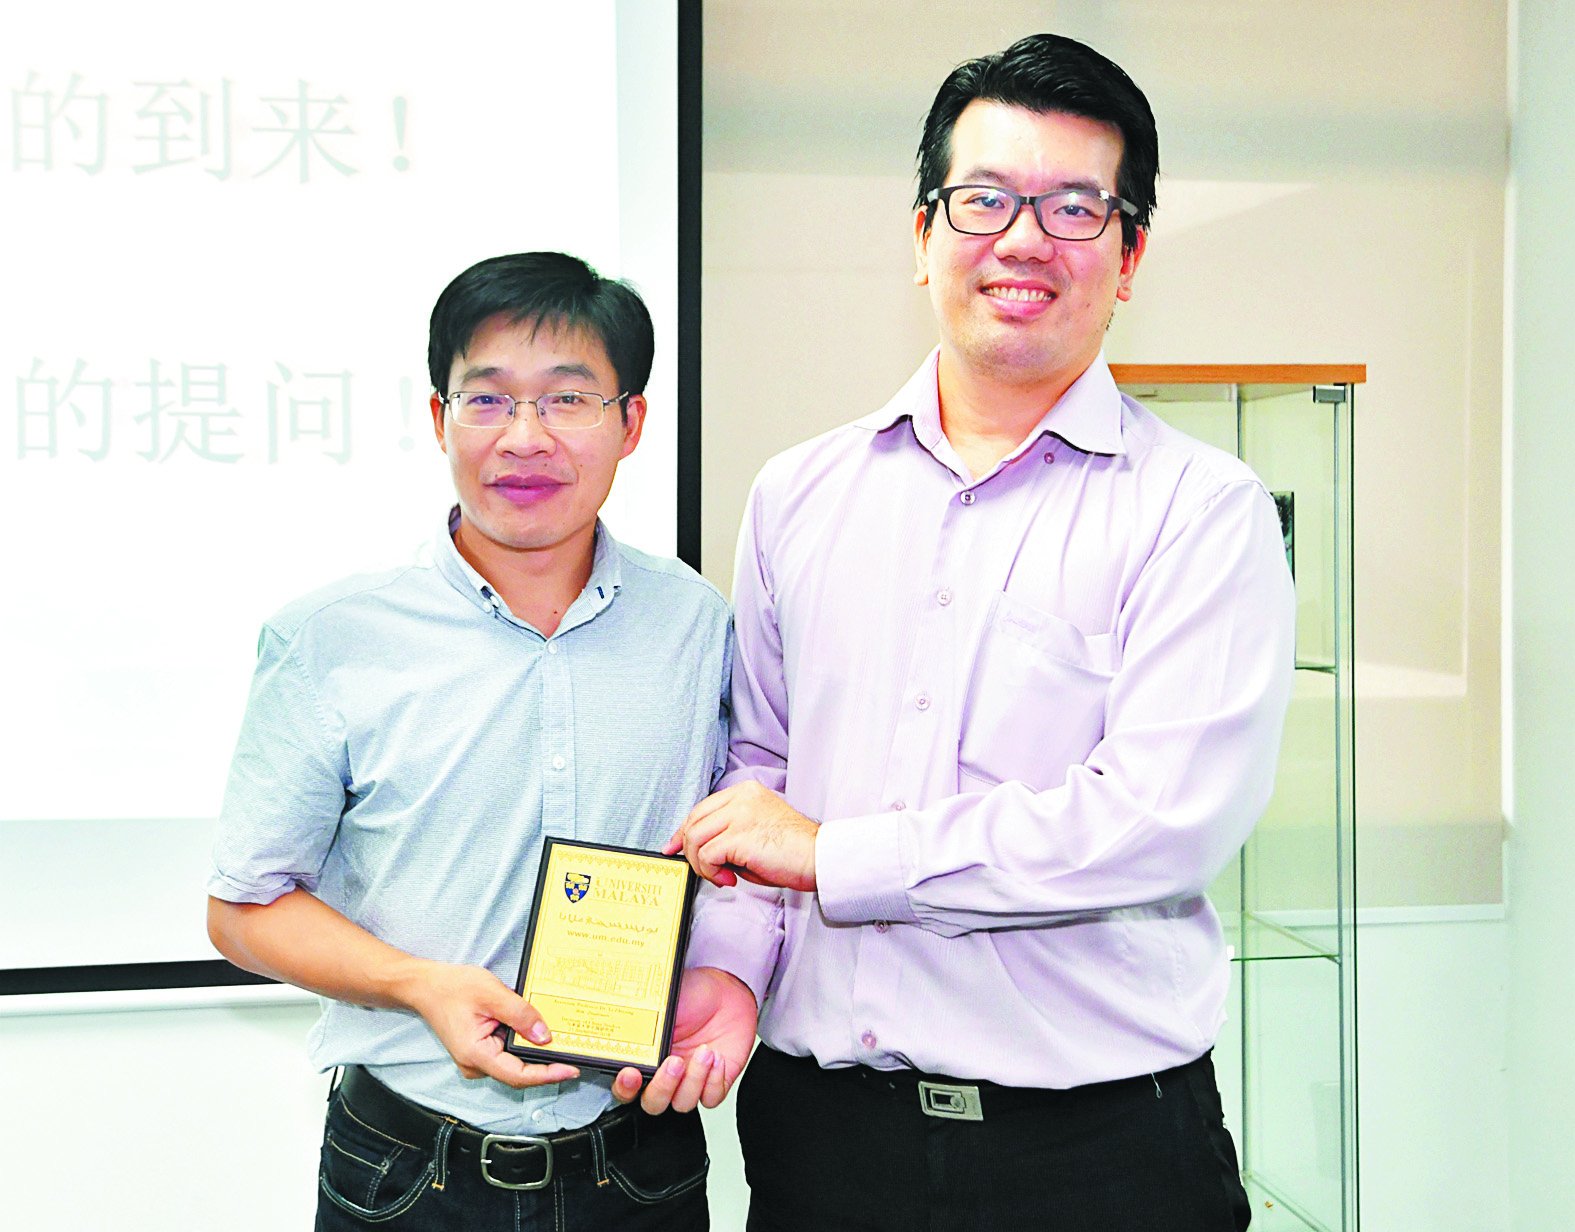 李志永（左）完成座谈会后，获得马大中国研究所副所长饶 兆斌赠送的纪念品。 （摄影：张真甄）